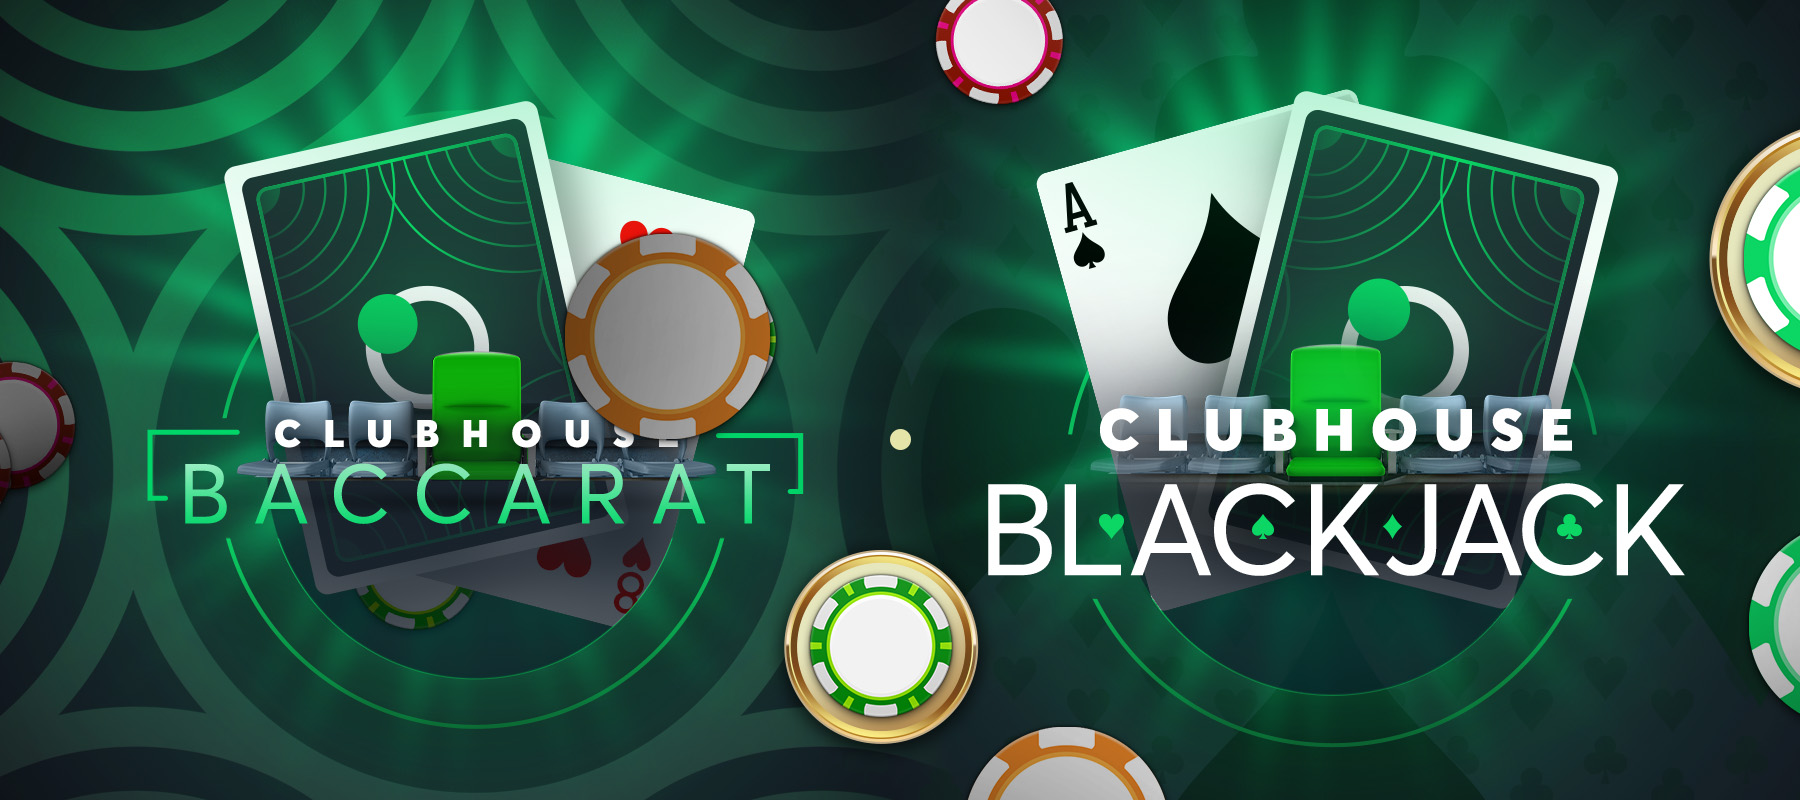 โต๊ะ Clubhouse Baccarat และ Blackjack ใหม่